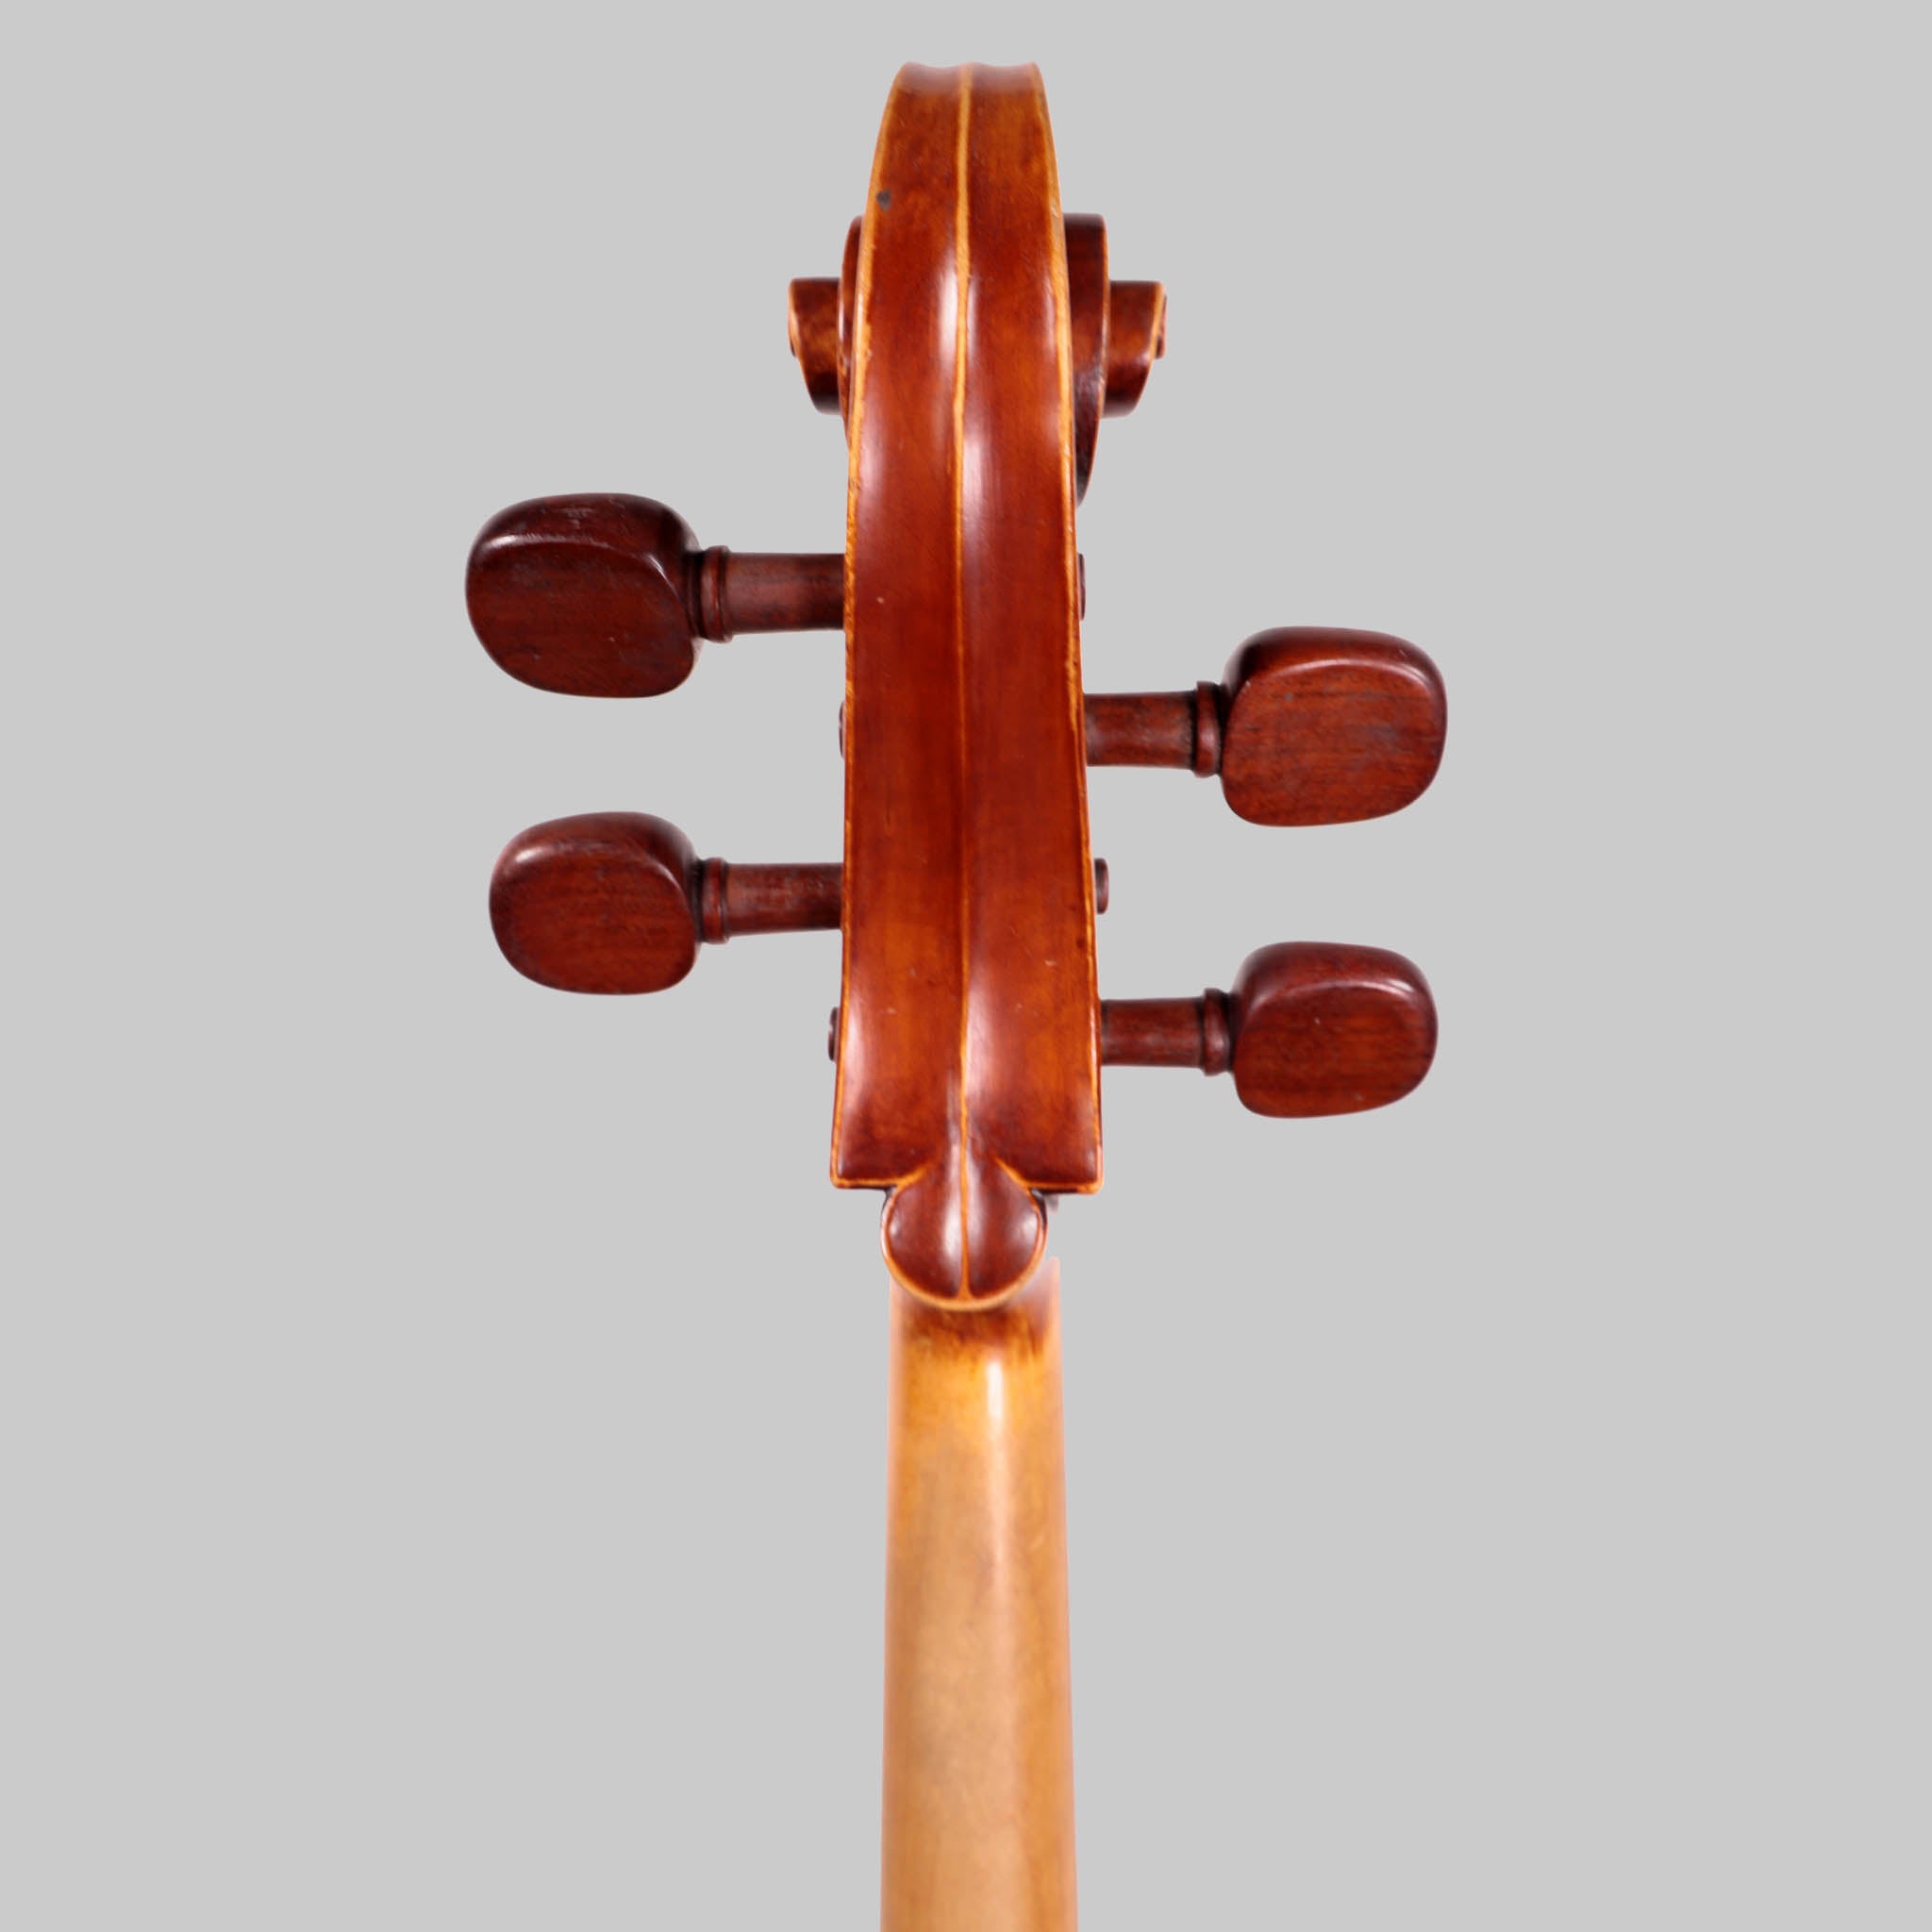 Arturo Moreno, Mexico D.F. 1992 Cello